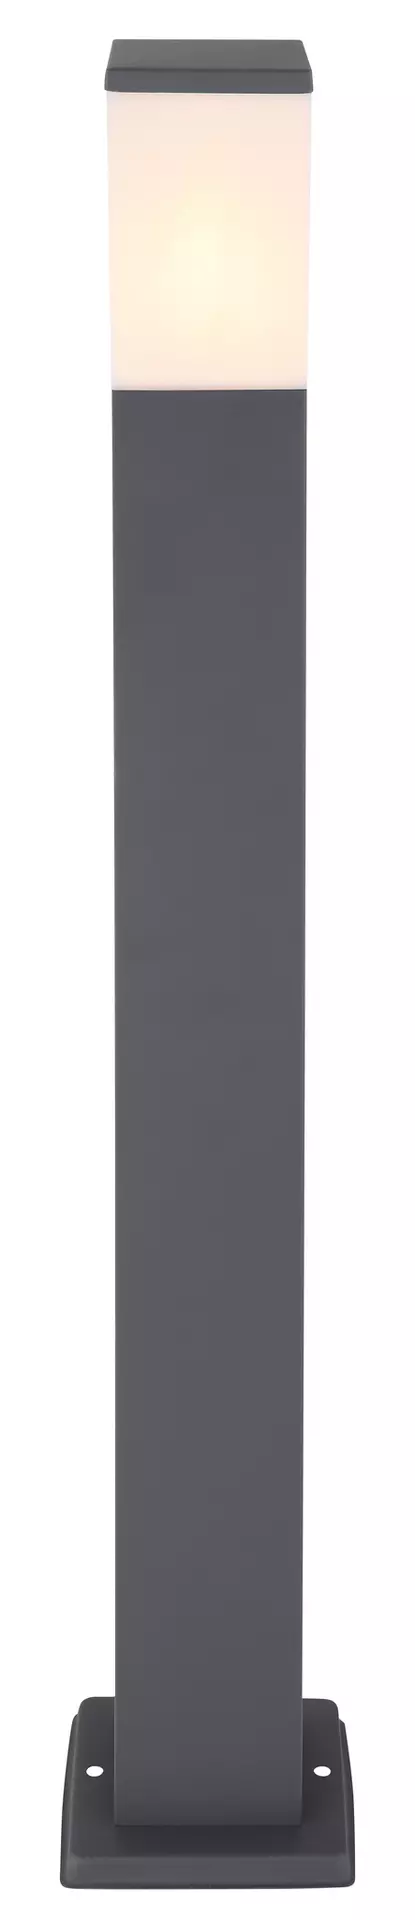 Steh-Aussenleuchte ELEGANT Globo Metall 8 x 80 x 8 cm